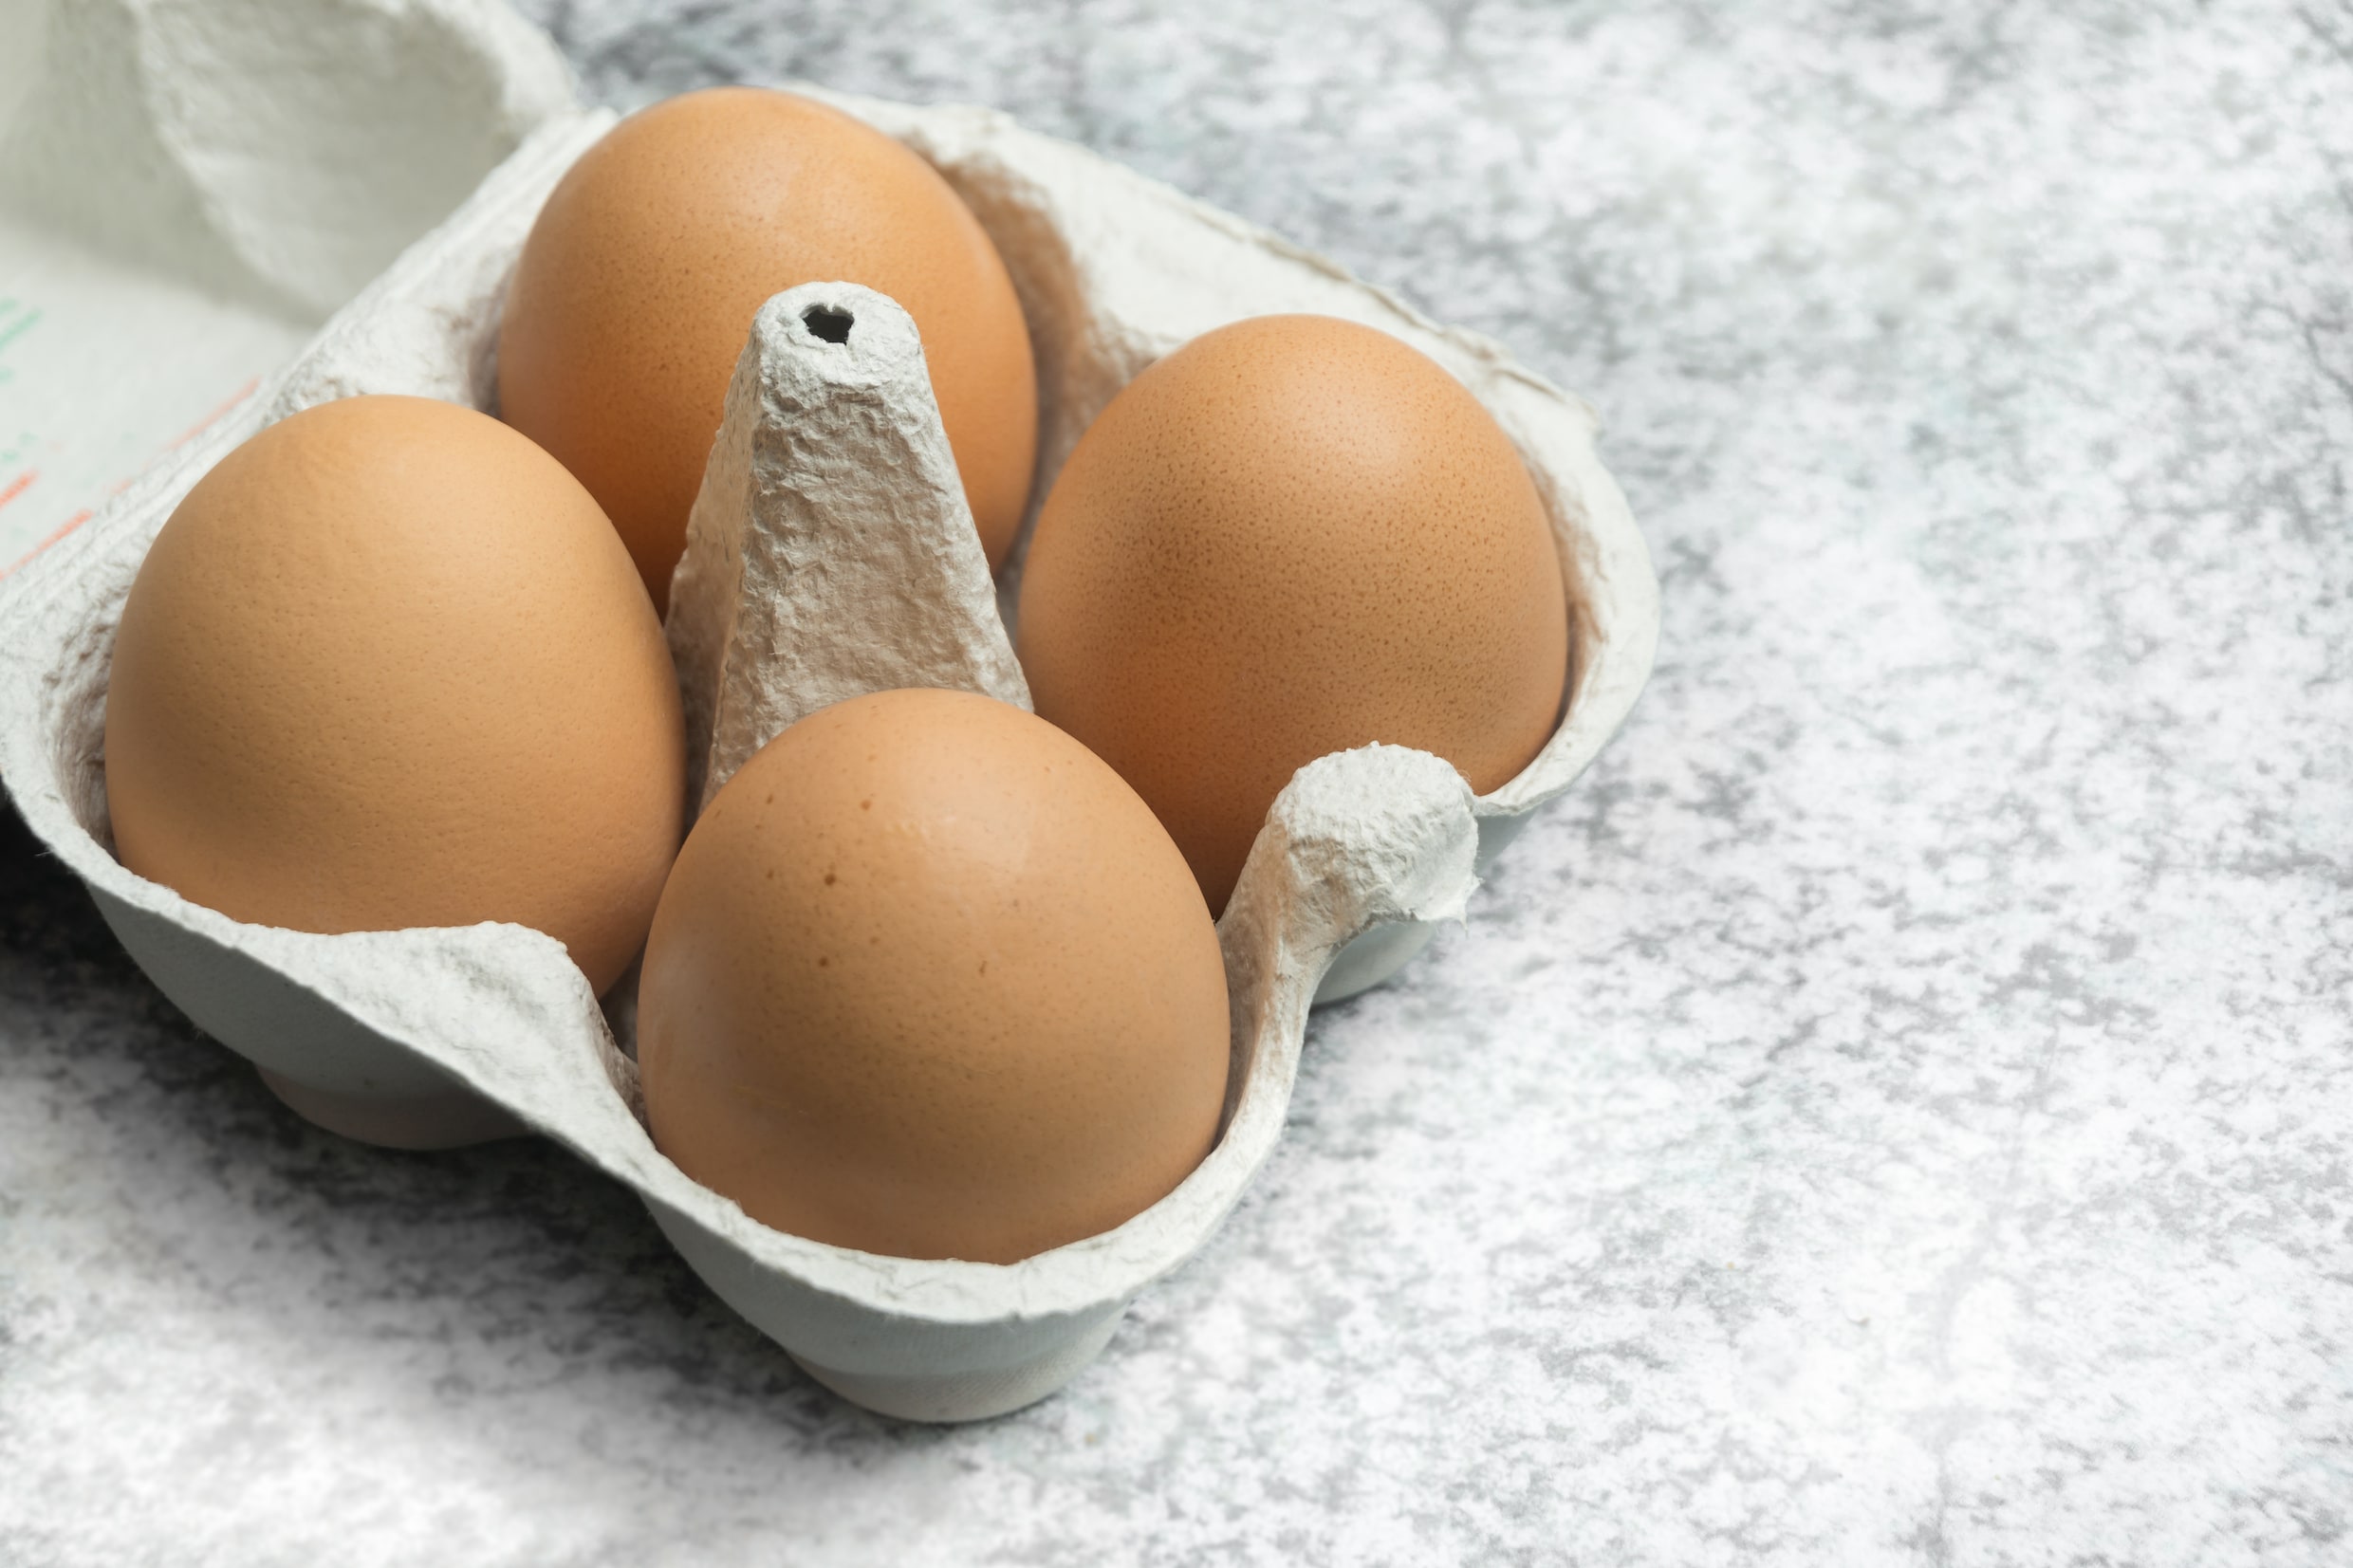 ‘In heel Vlaanderen geen eieren van eigen kweek meer als we Europese norm volgen’